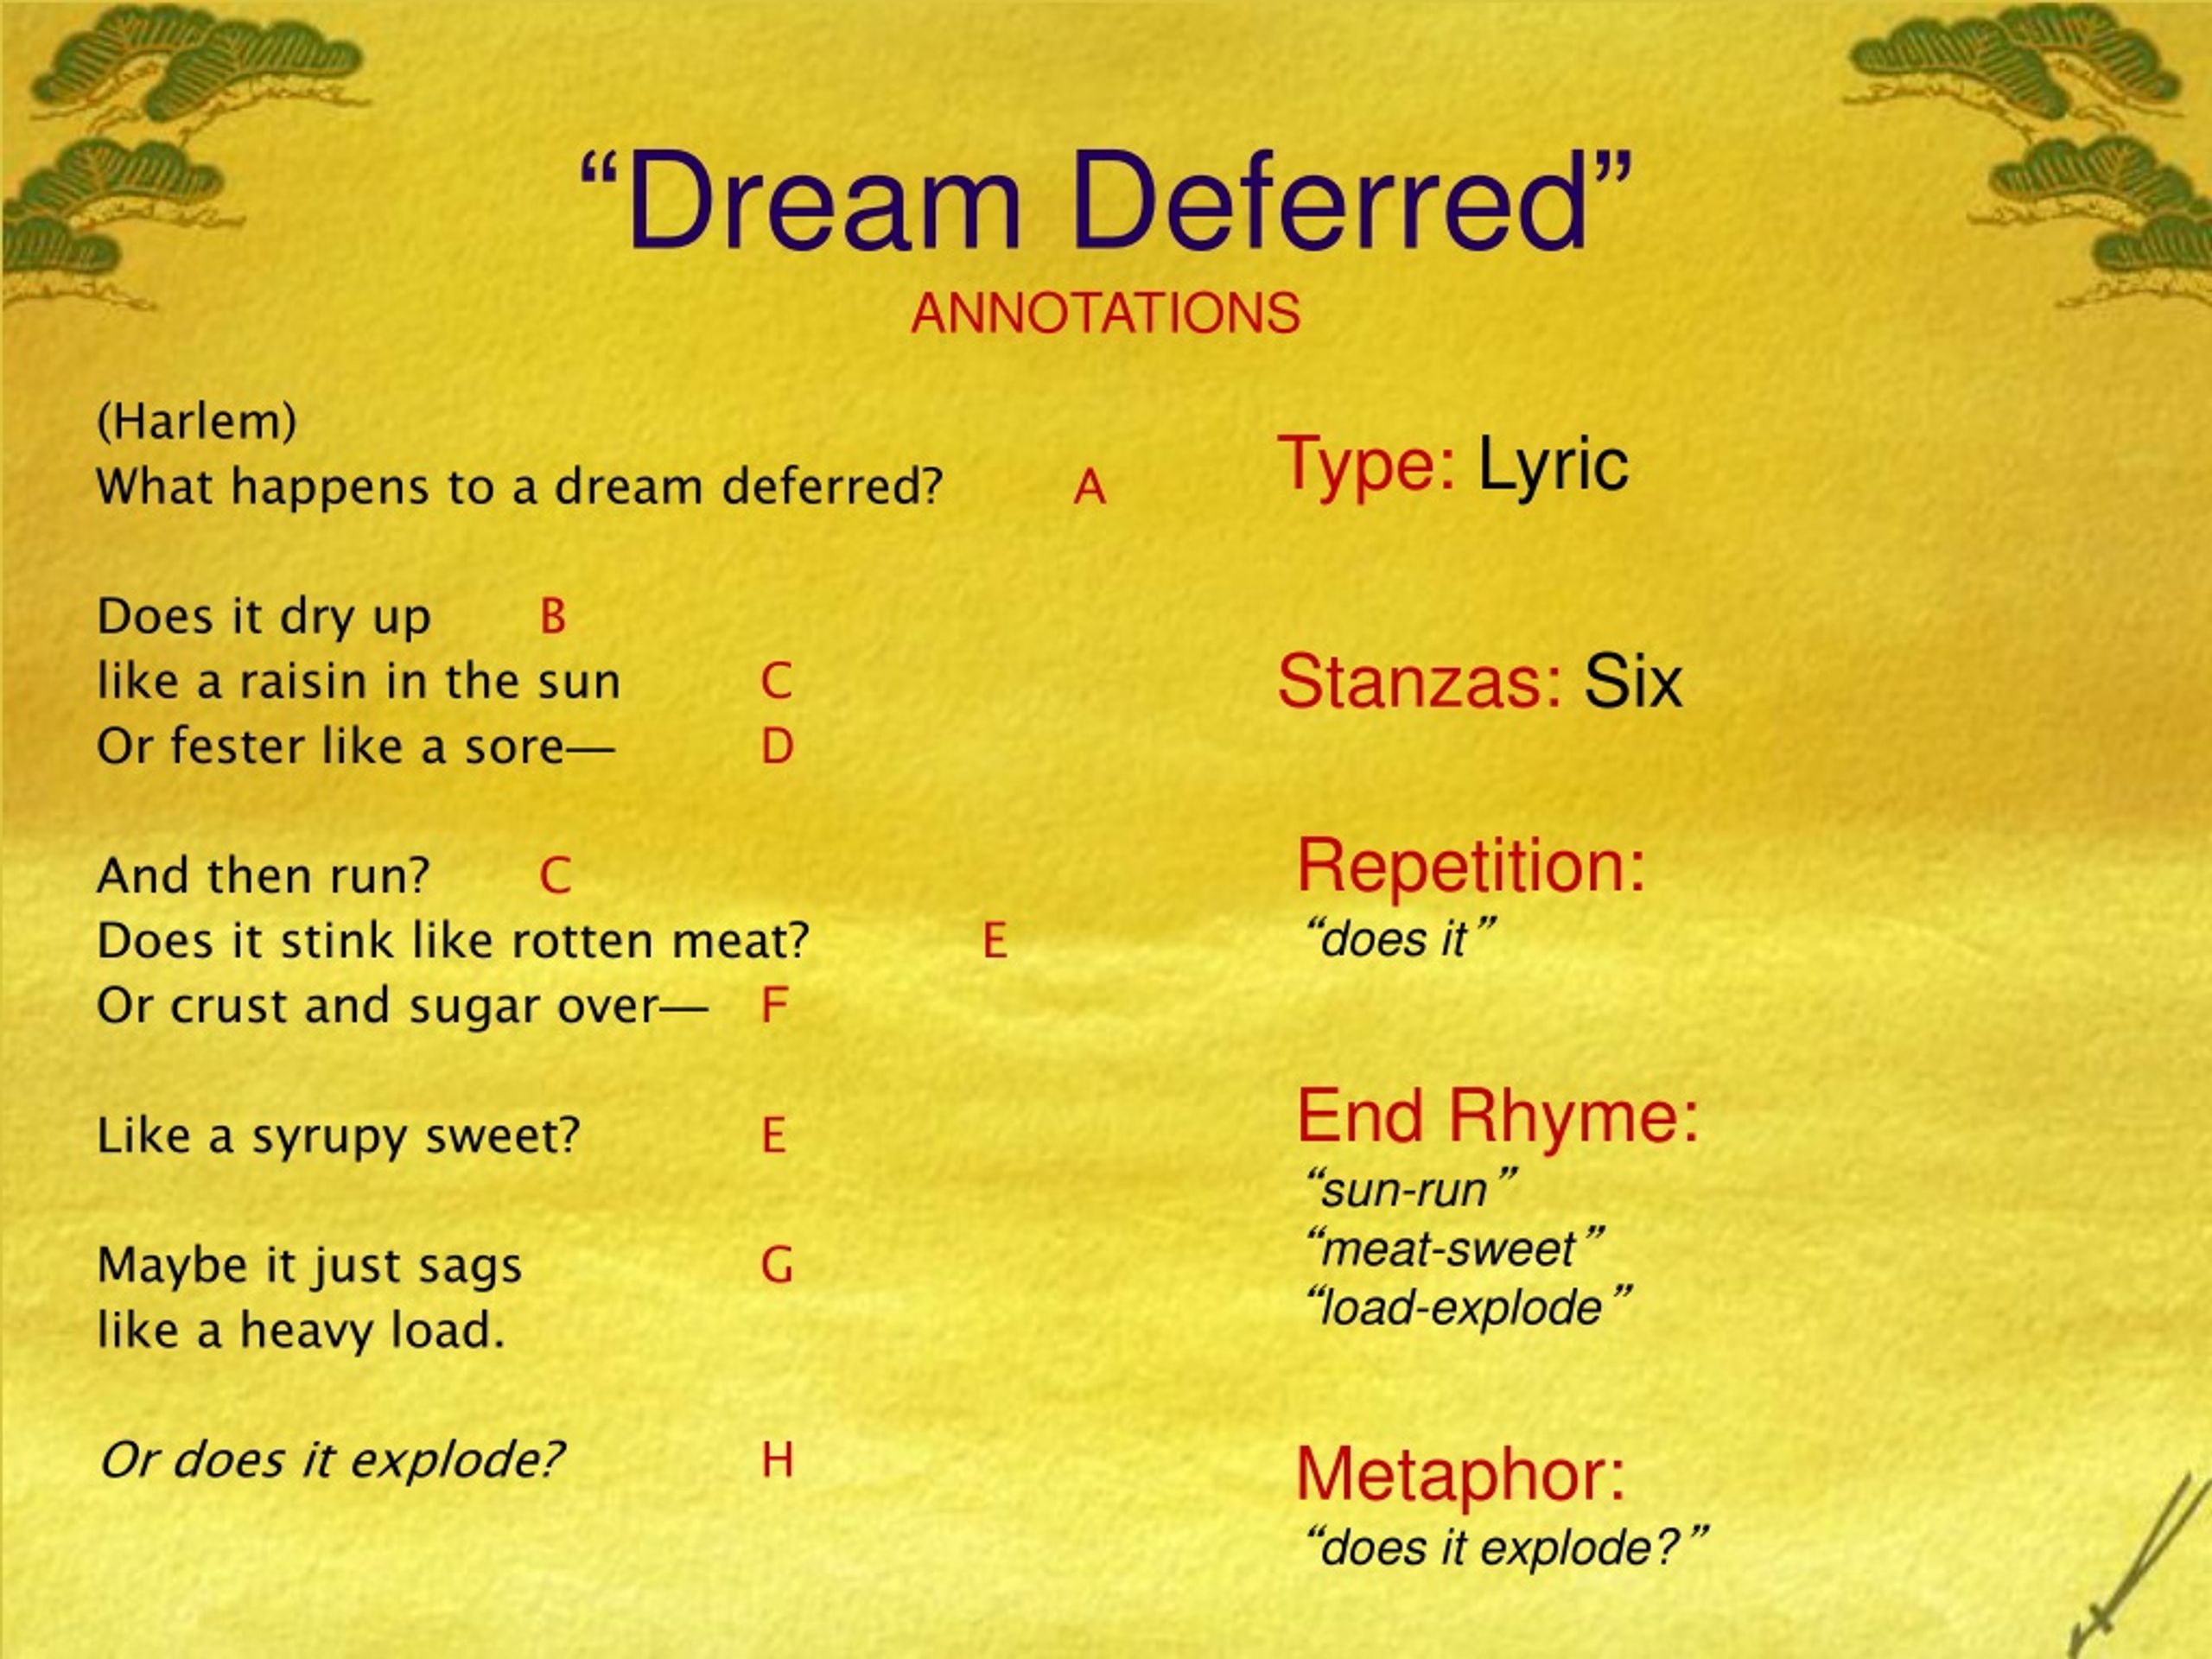 dreams poem by langston hughes summary